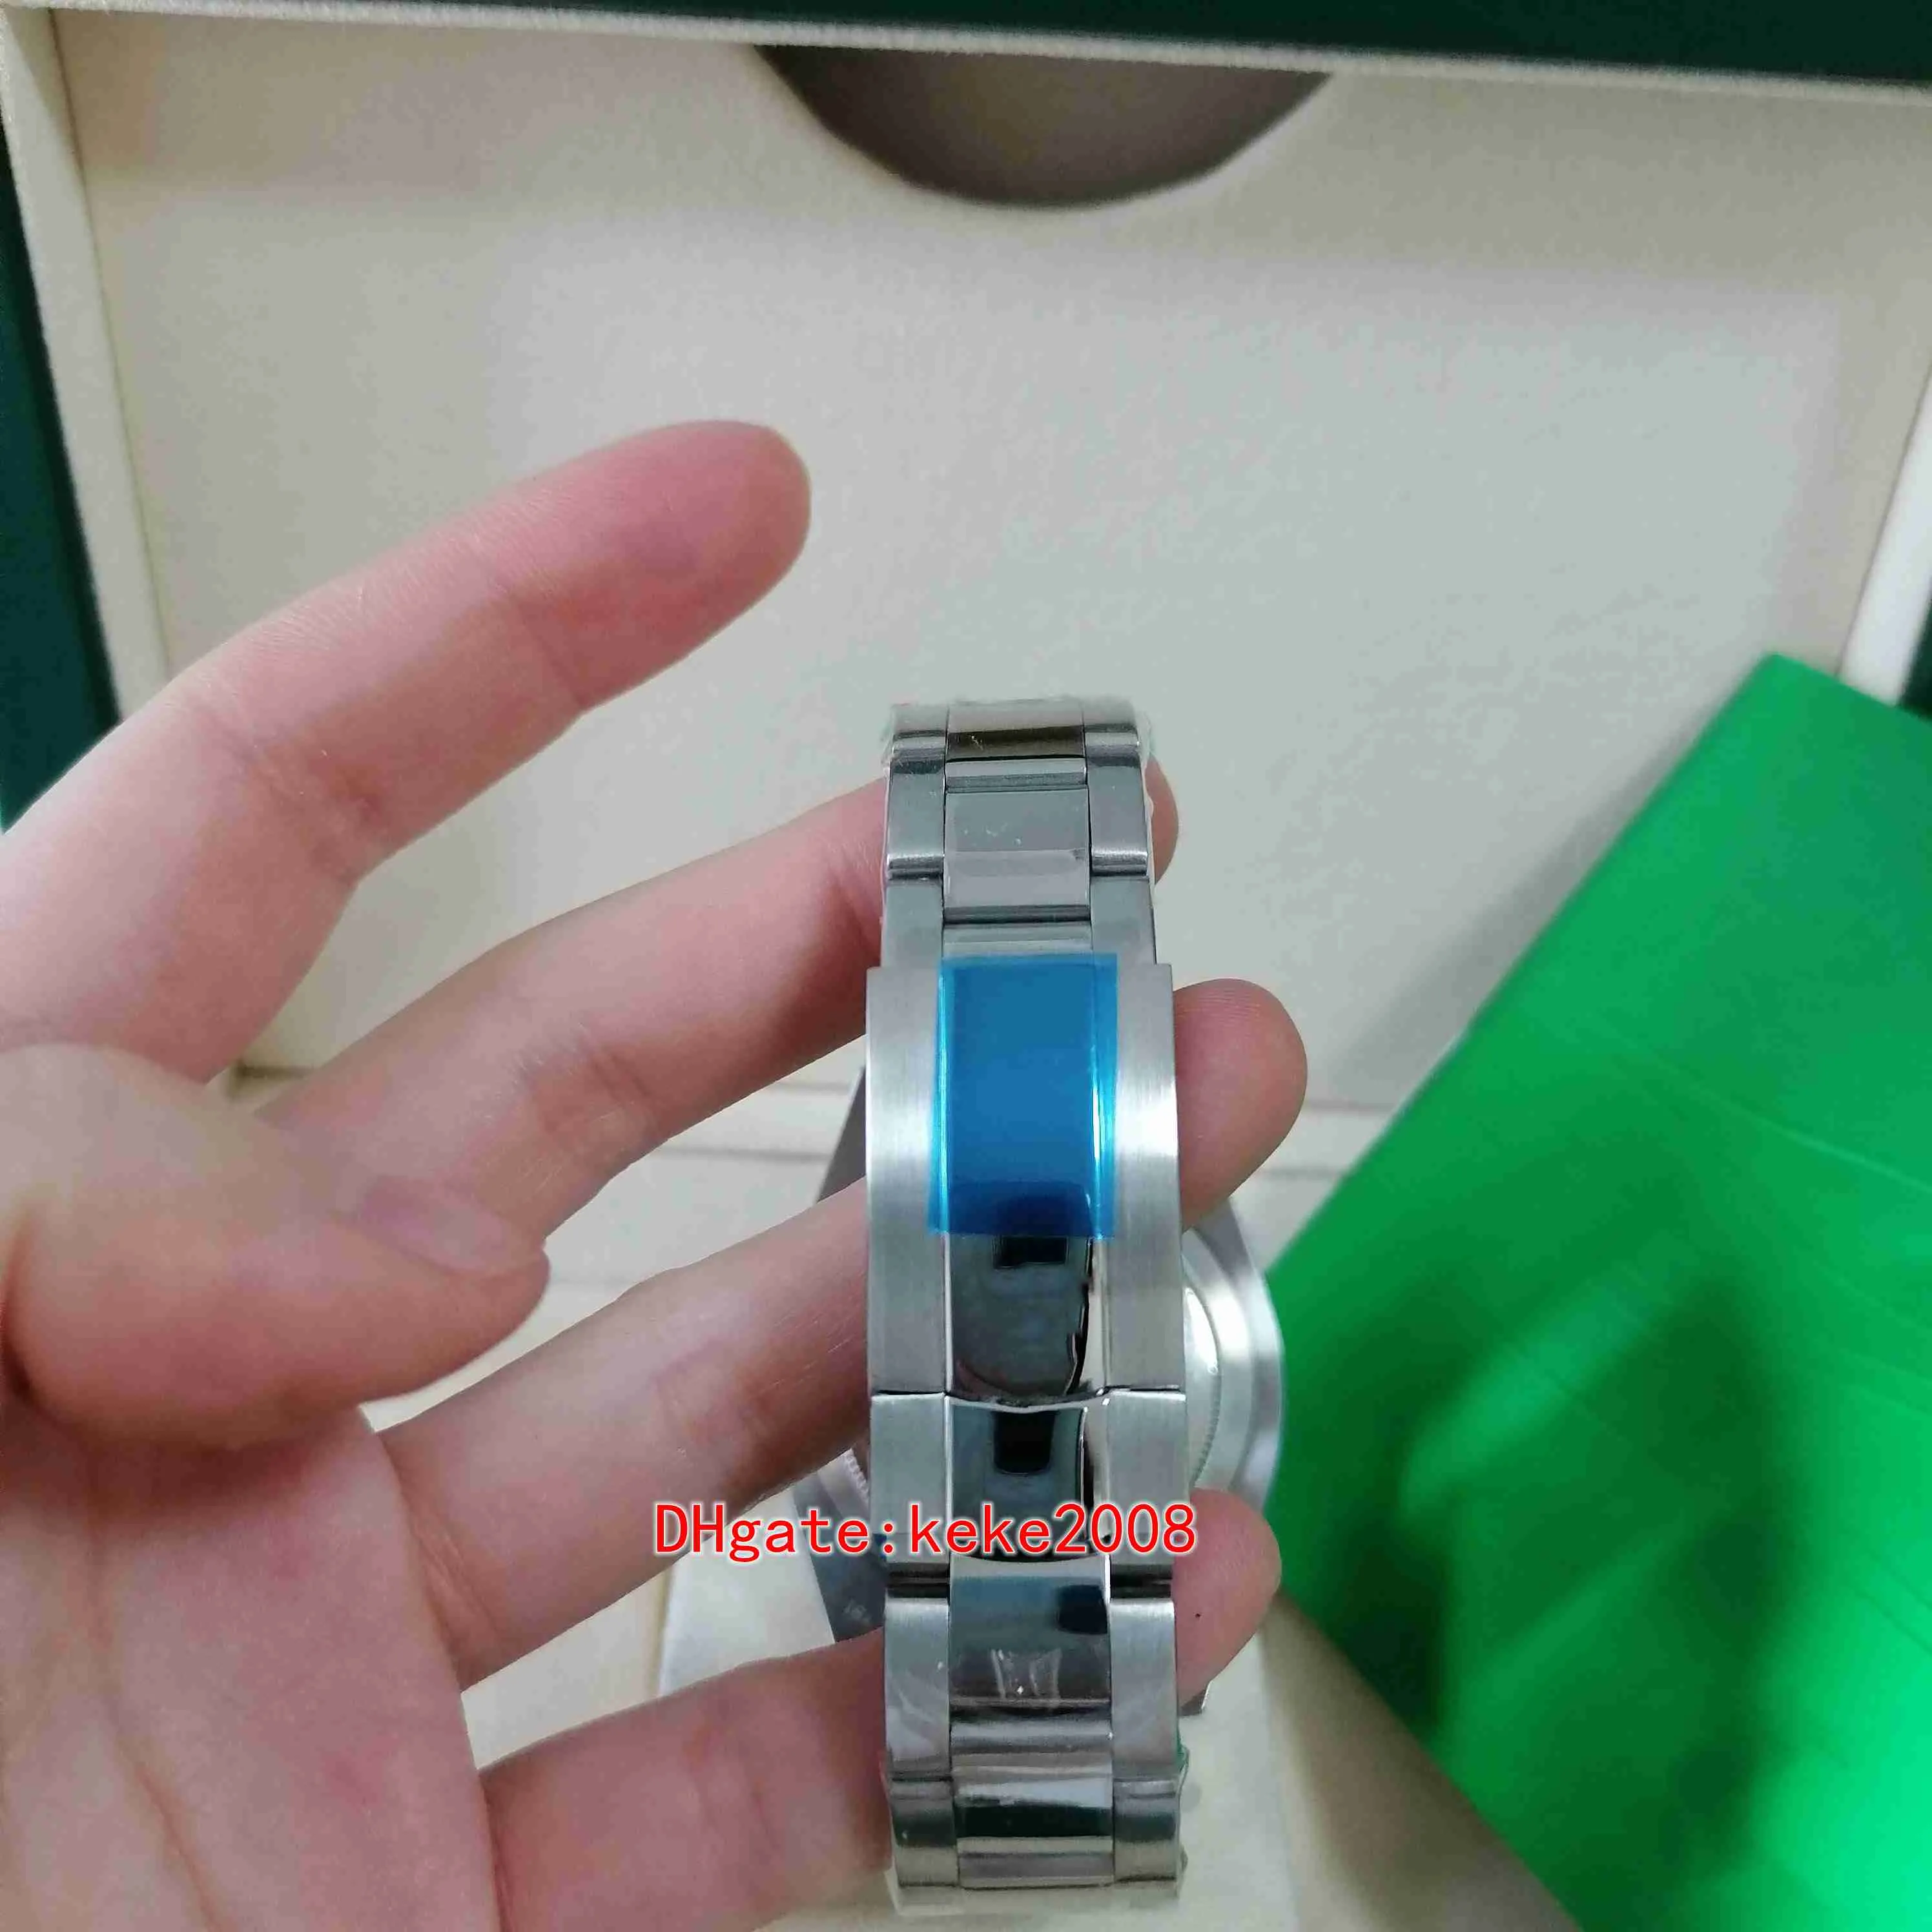 Excelente relógio masculino de alta qualidade relógios de pulso 326934 42mm aço inoxidável mostrador azul luminescente automático mecânico masculino topselli186o